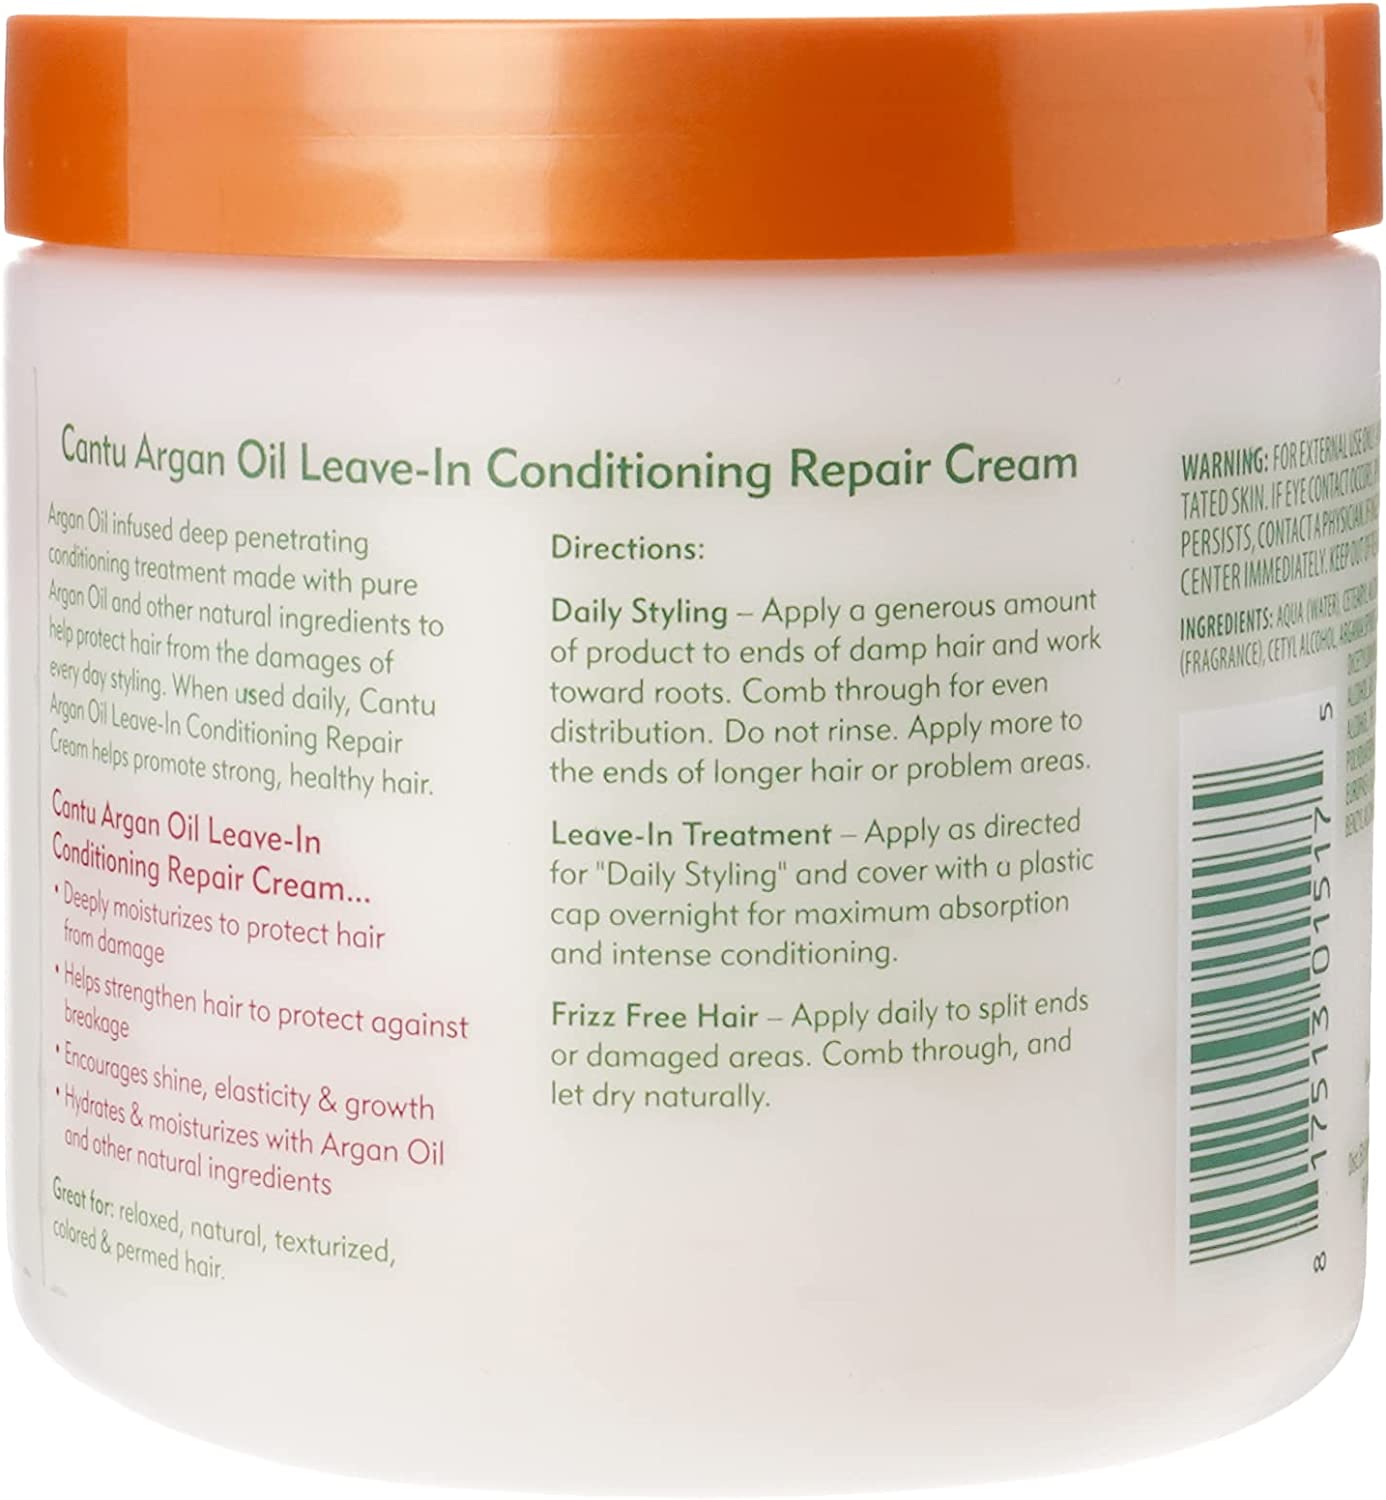 CANTU Argan Oil Leave-In Conditioning Repair Cream-435g